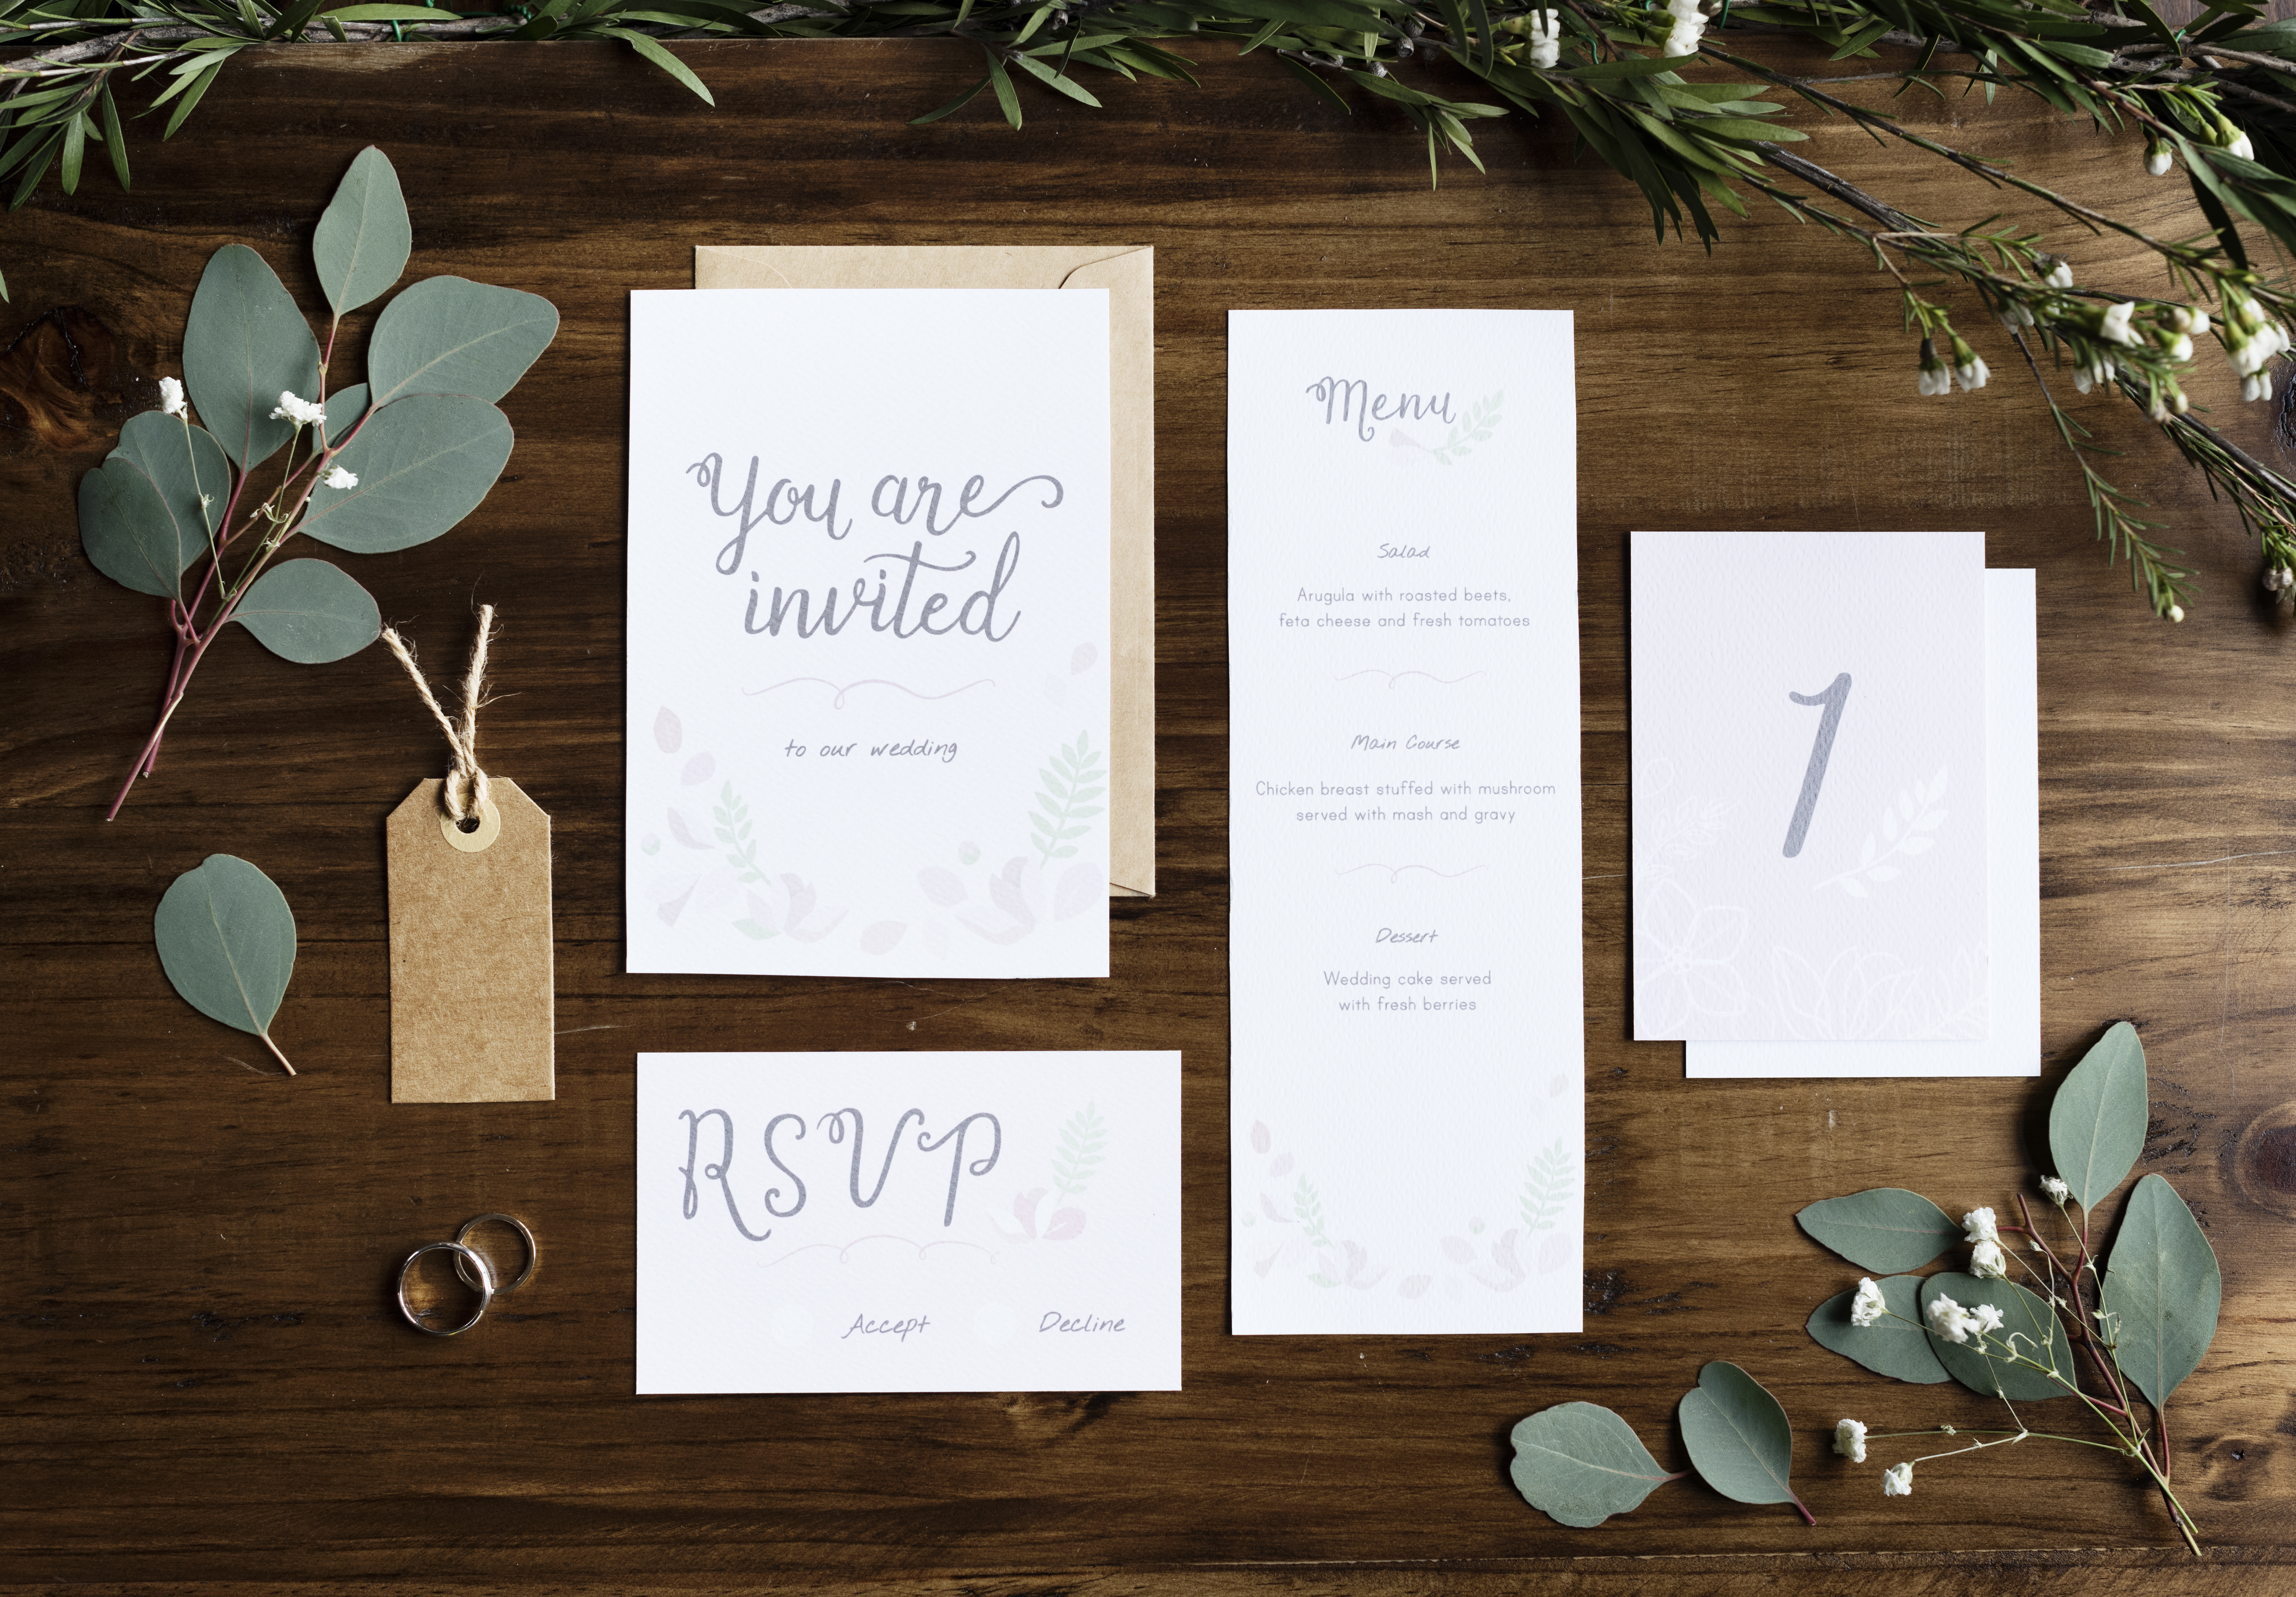 Invitación de boda | Foto: Shutterstock